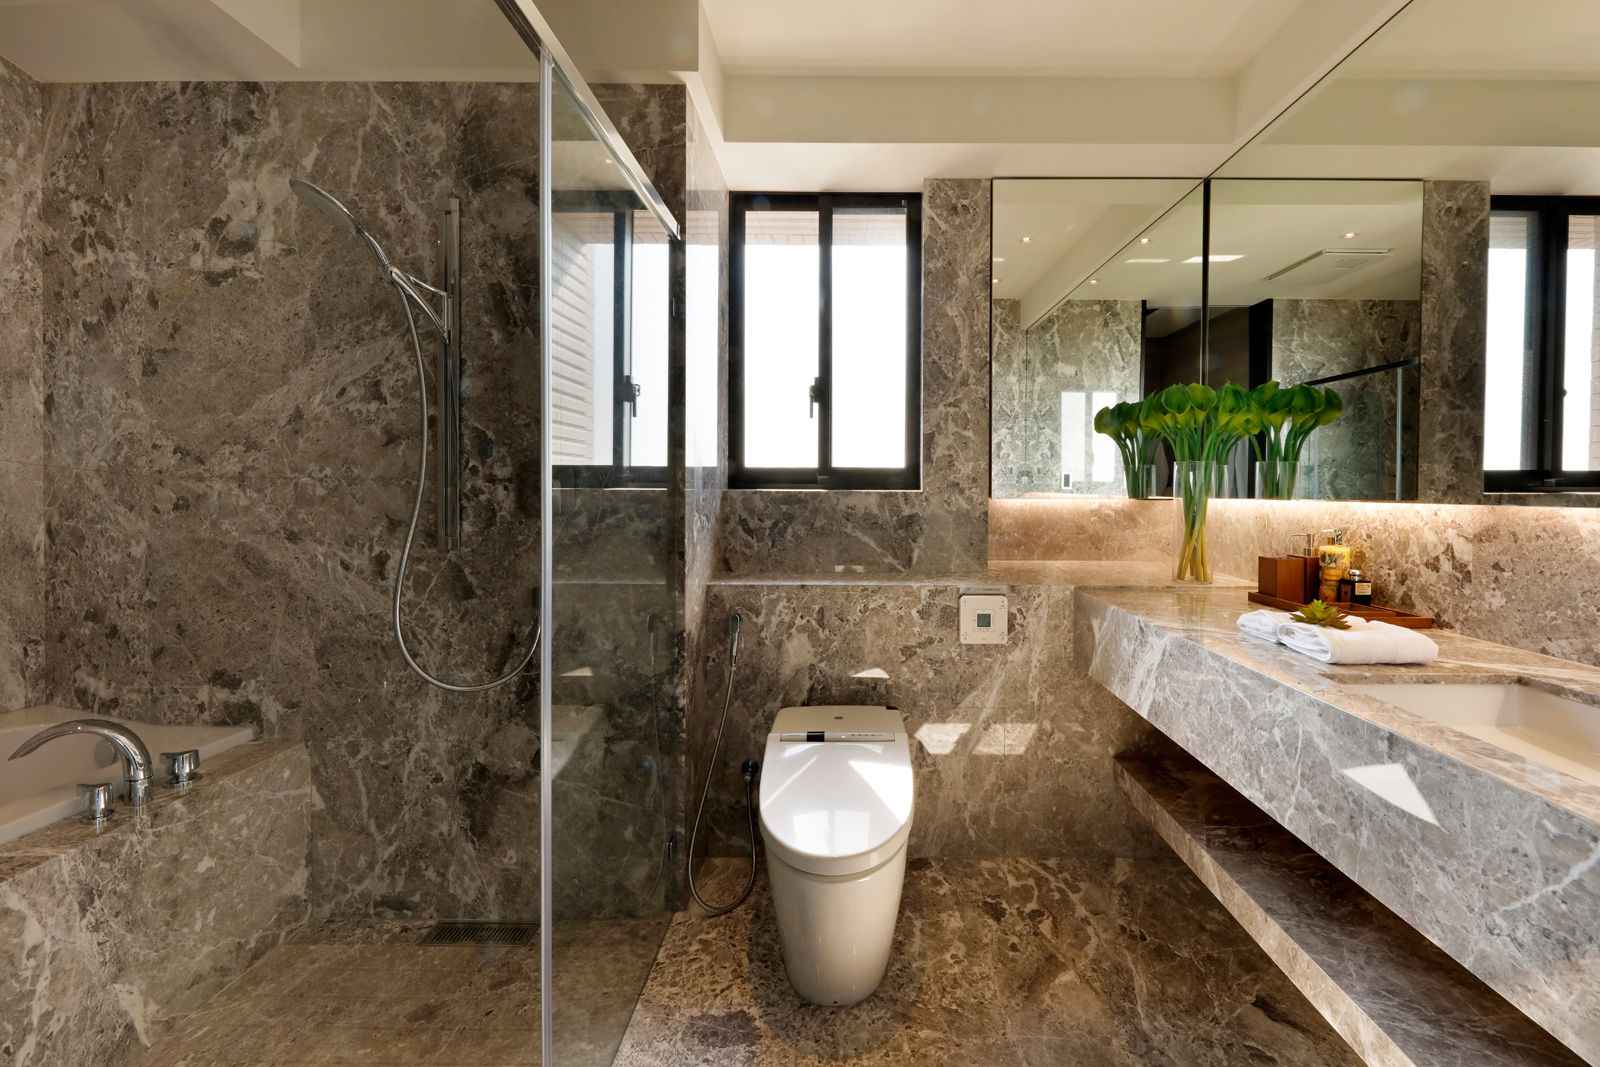 作品十號德鑫v1, 沐設計 沐設計 Modern style bathrooms